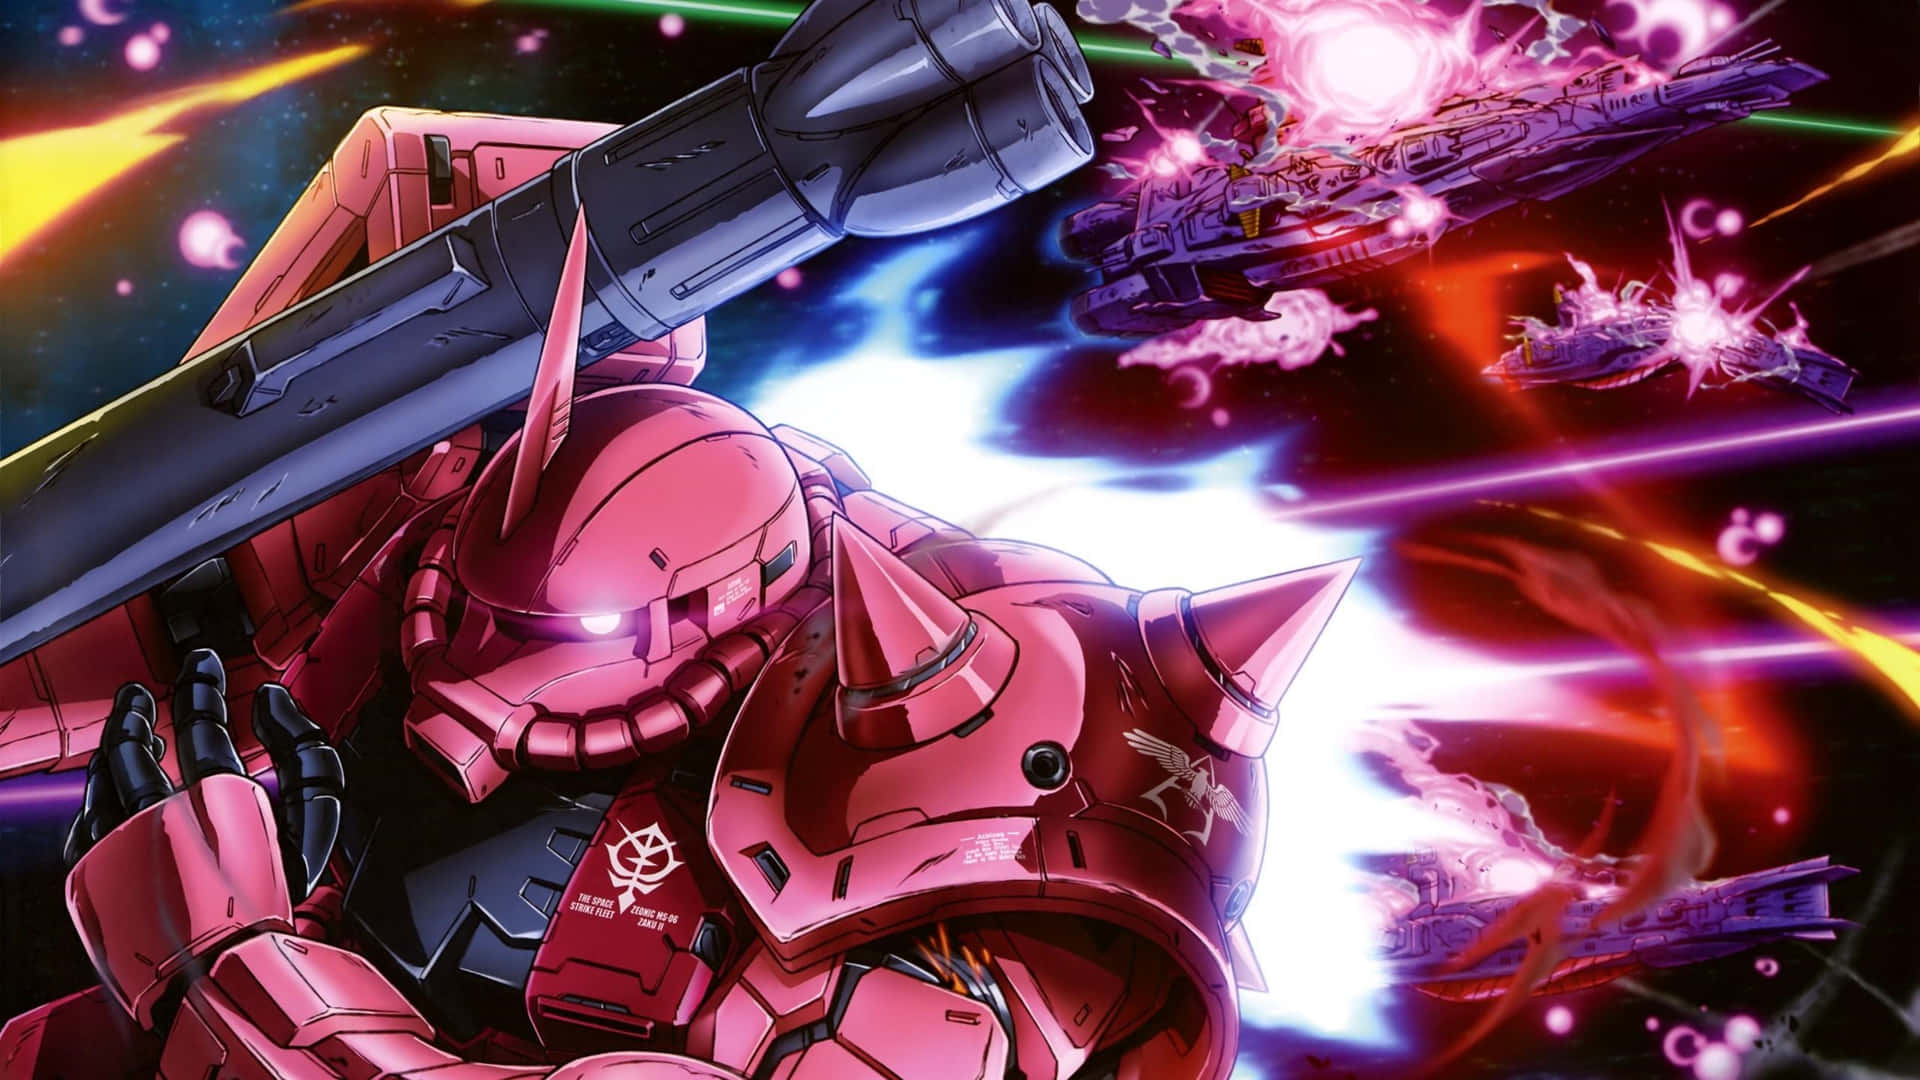 "Join the team and Pilot the most advanced mechs: Gundam 4K" Wallpaper